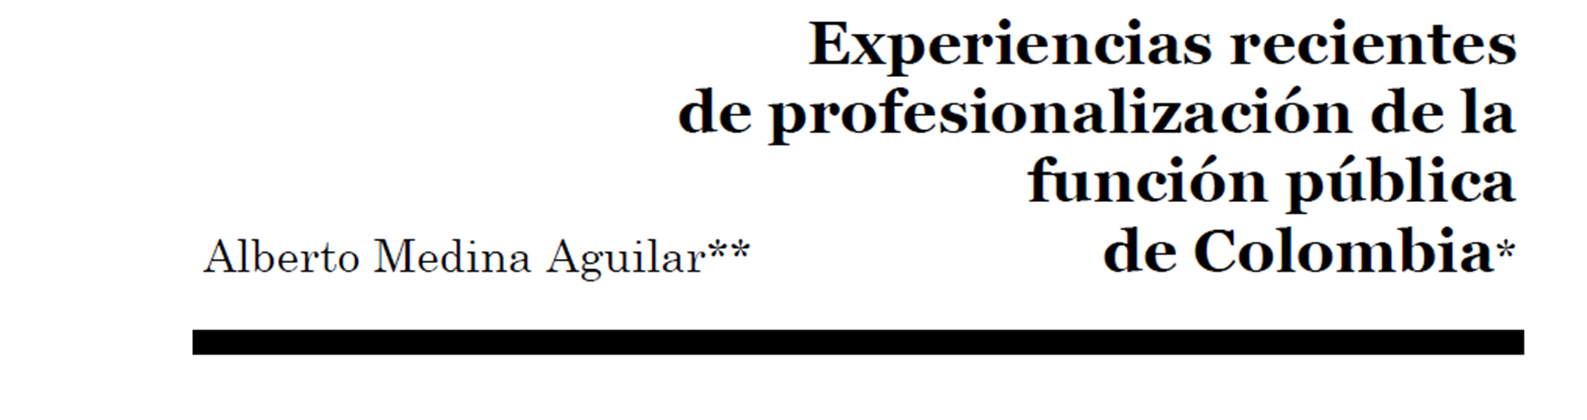 Experiencias recientes de profesionalización de la Función Pública de Colombia - 2008